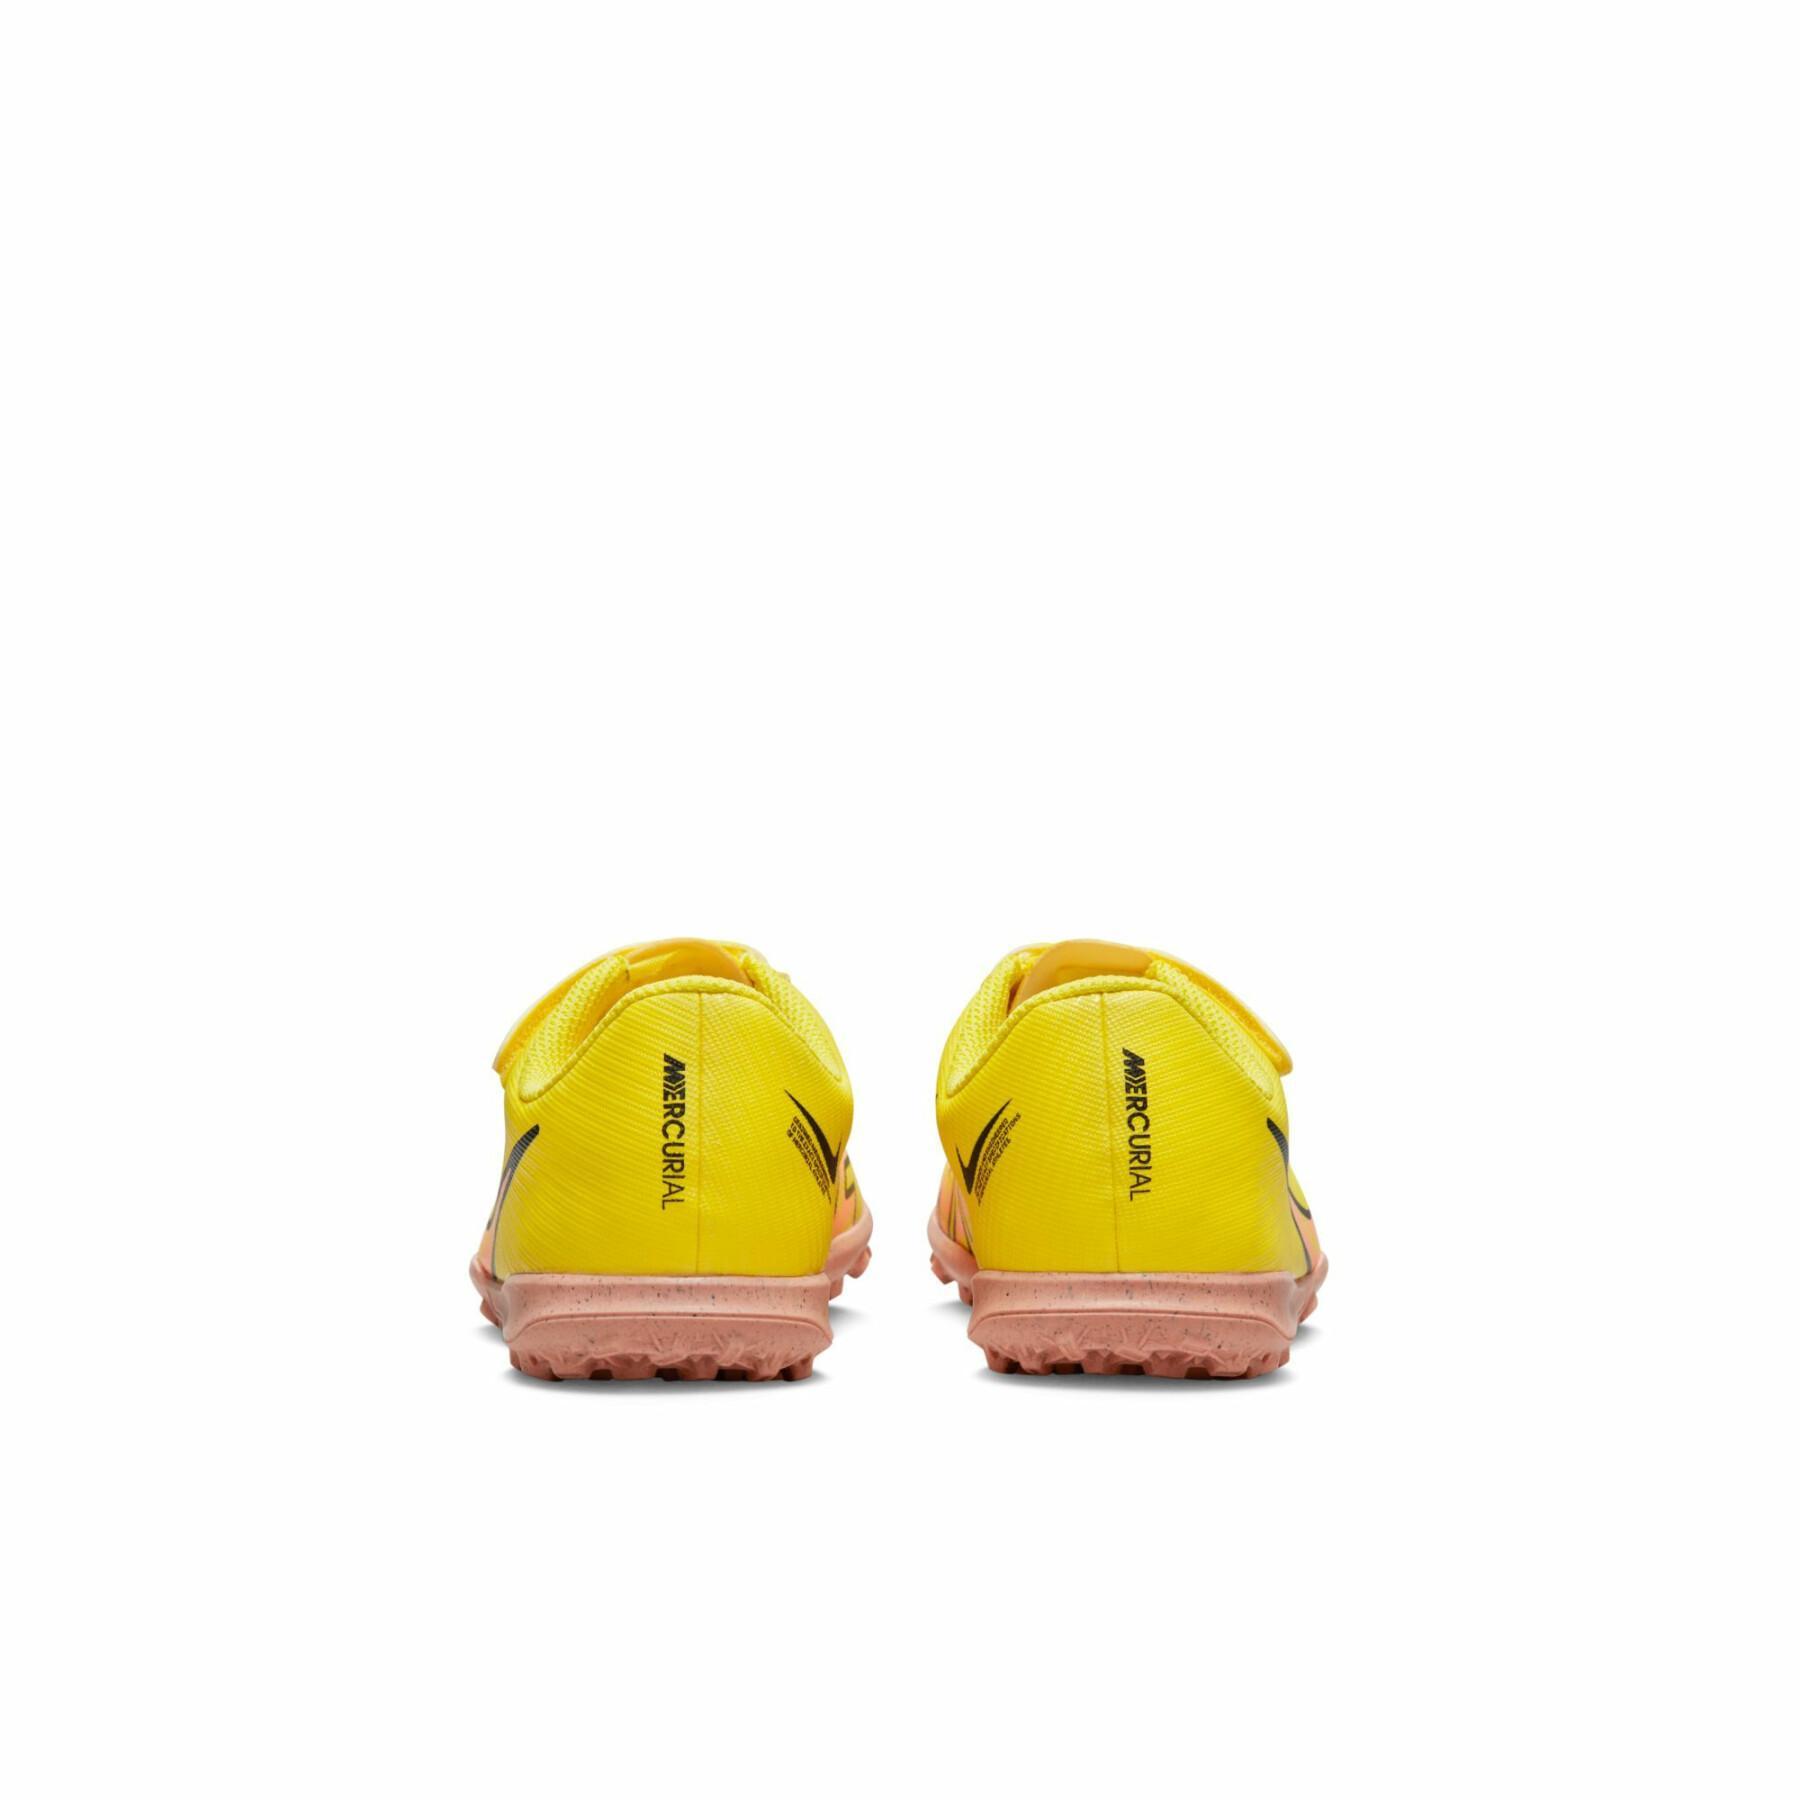 Sapatos de futebol para crianças Nike Mercurial Vapor 15 Club TF - Lucent Pack